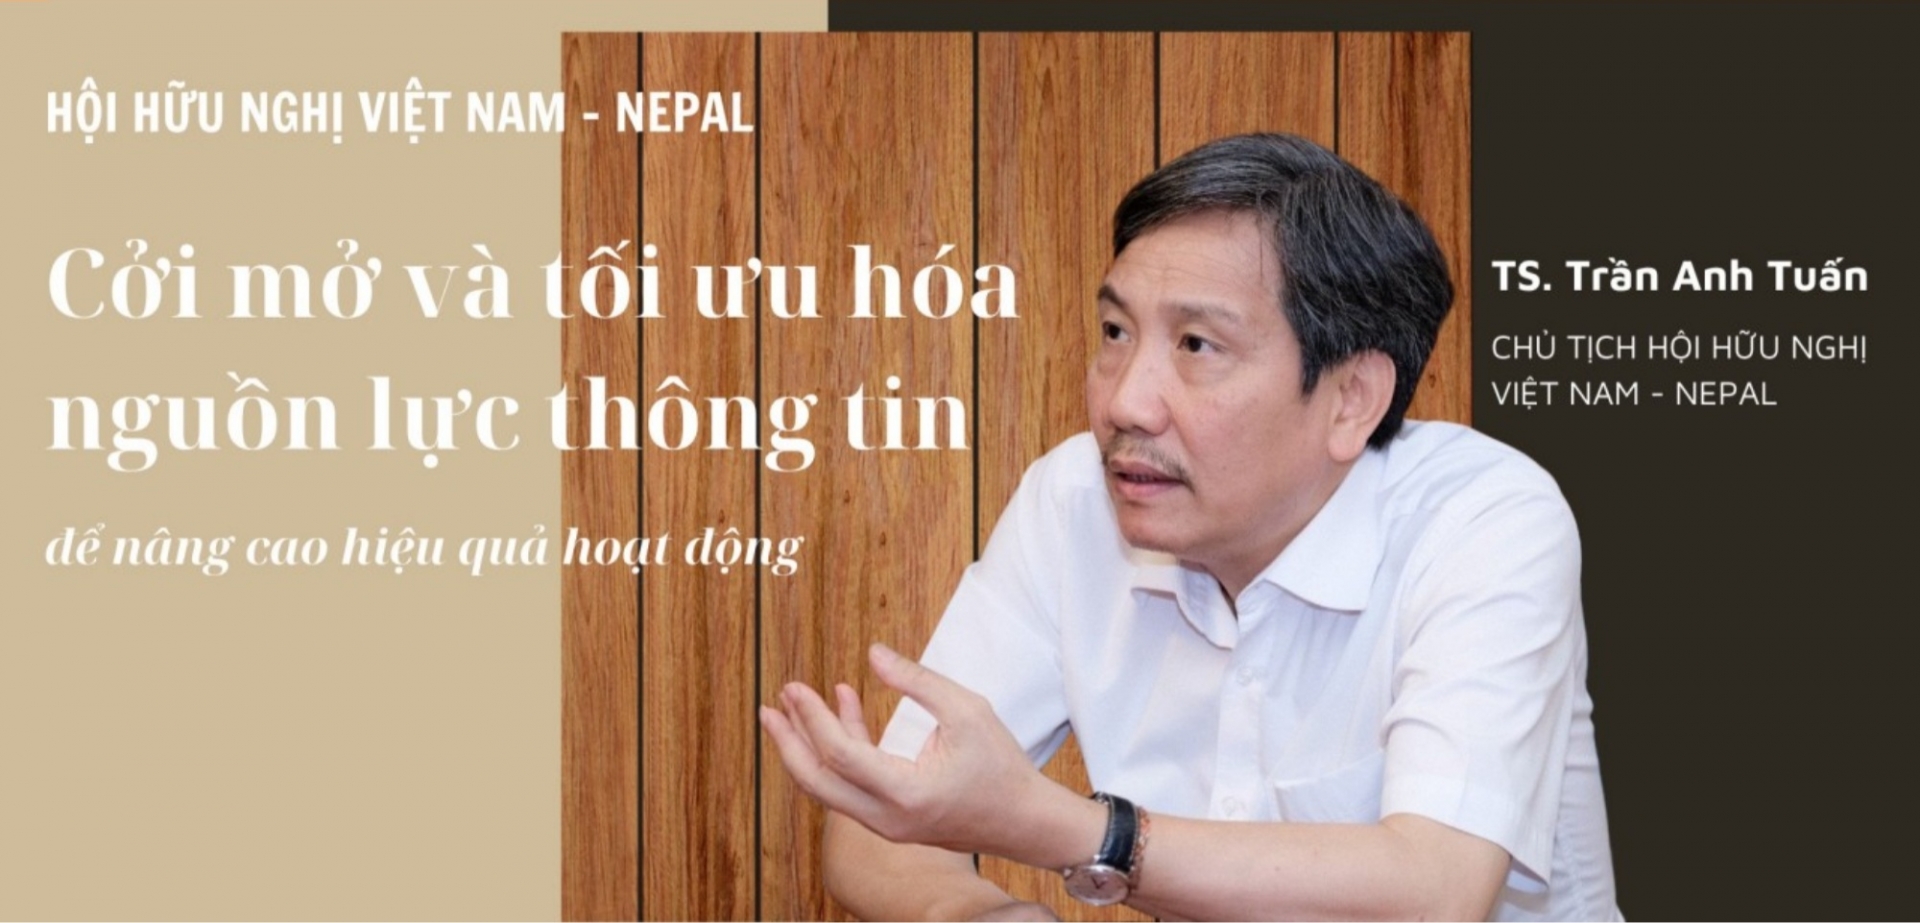 越南-尼泊尔友好协会主席陈英俊博士。